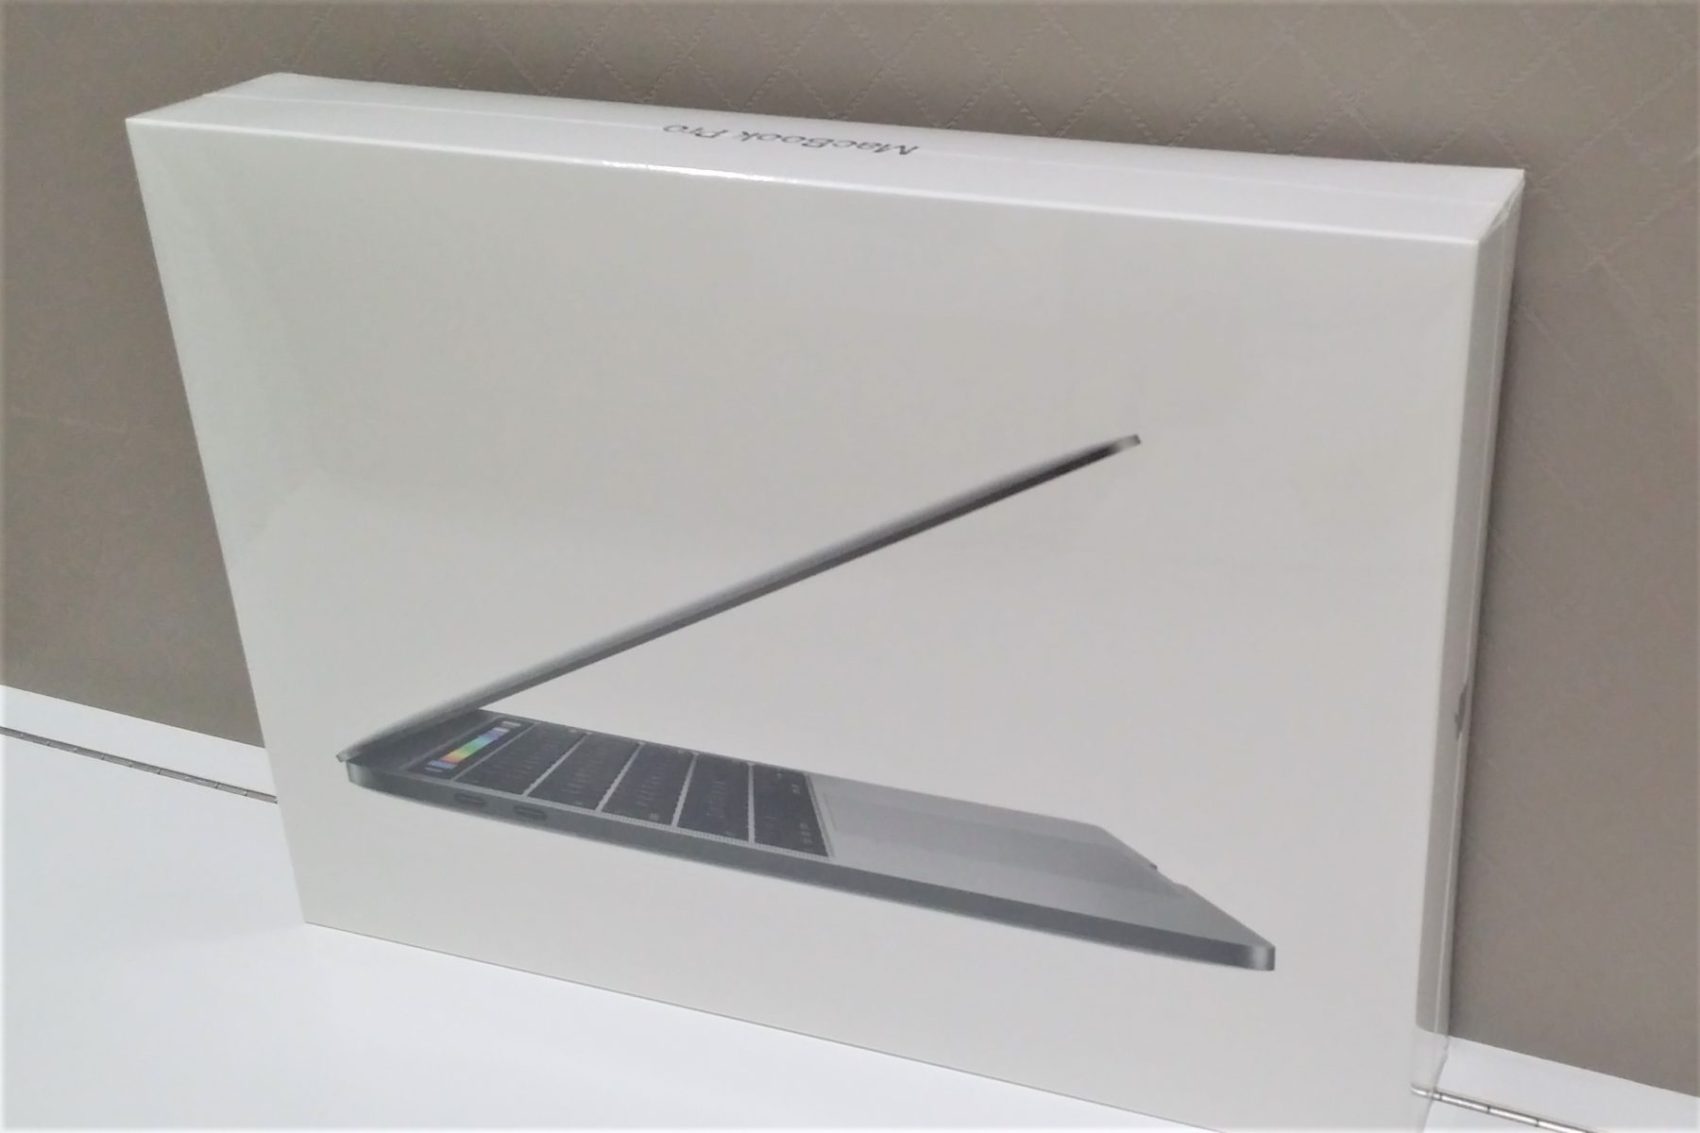 名古屋の質屋で新品 MacBookProのお買取実績です～名古屋市中区より/Apple タブレット